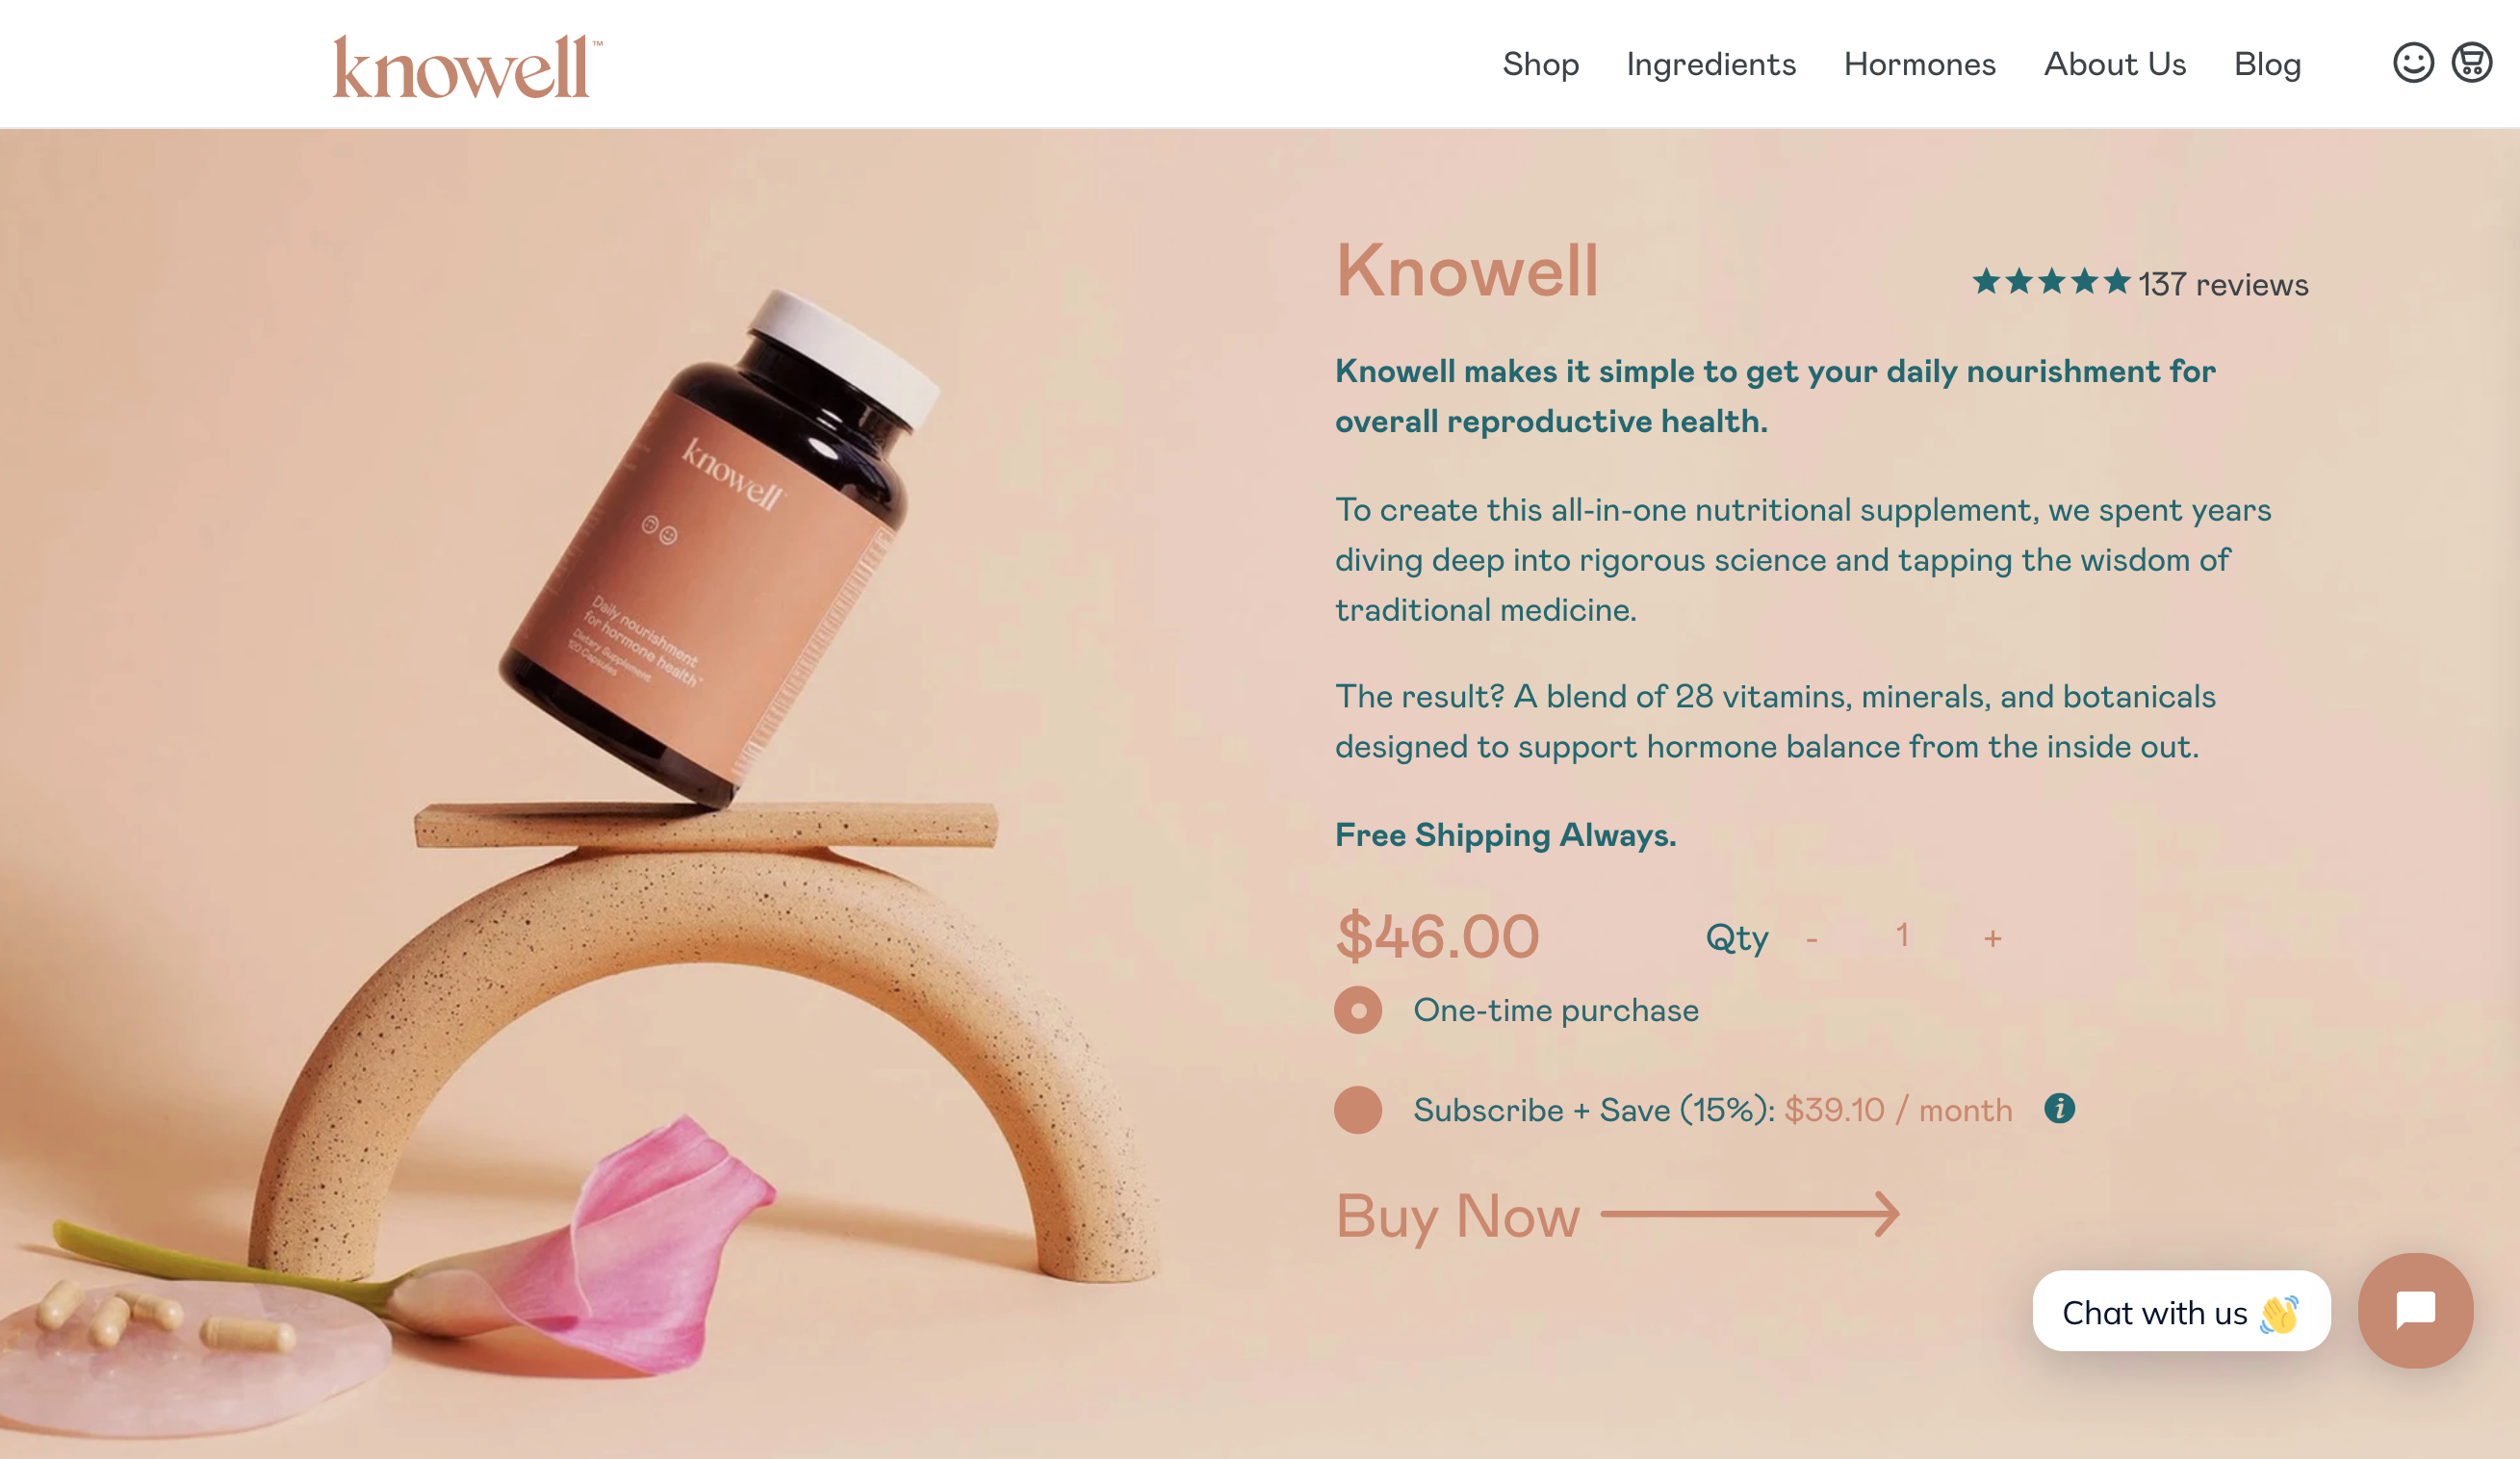 Knowell 网站上的产品页面示例。